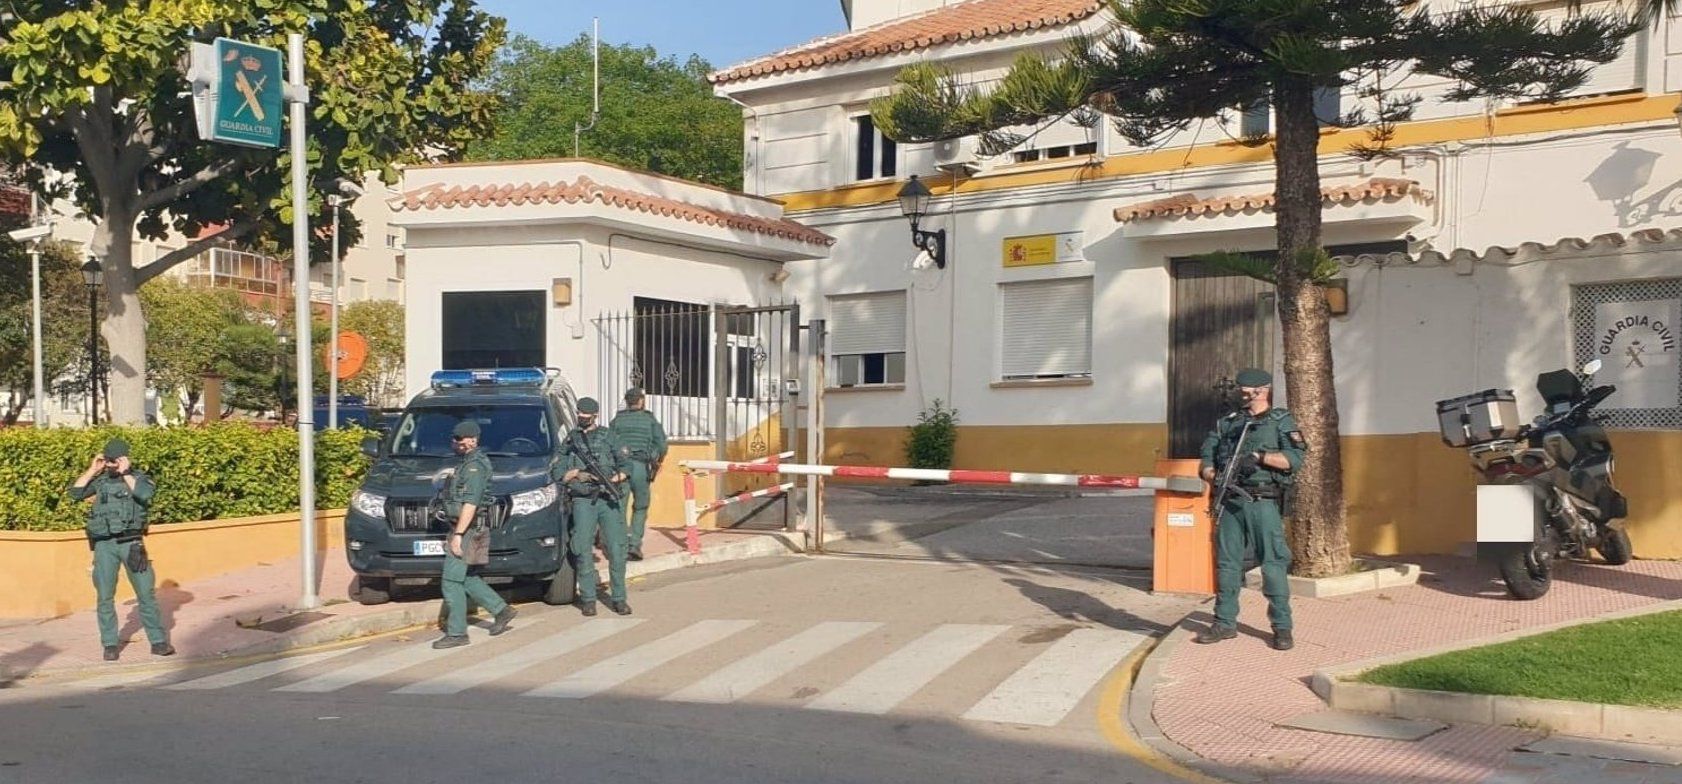 La Guardia Civil trabaja en una operación contra el tráfico de hachís con 'sedes' en Tarifa, Algeciras y la Costa del Sol.